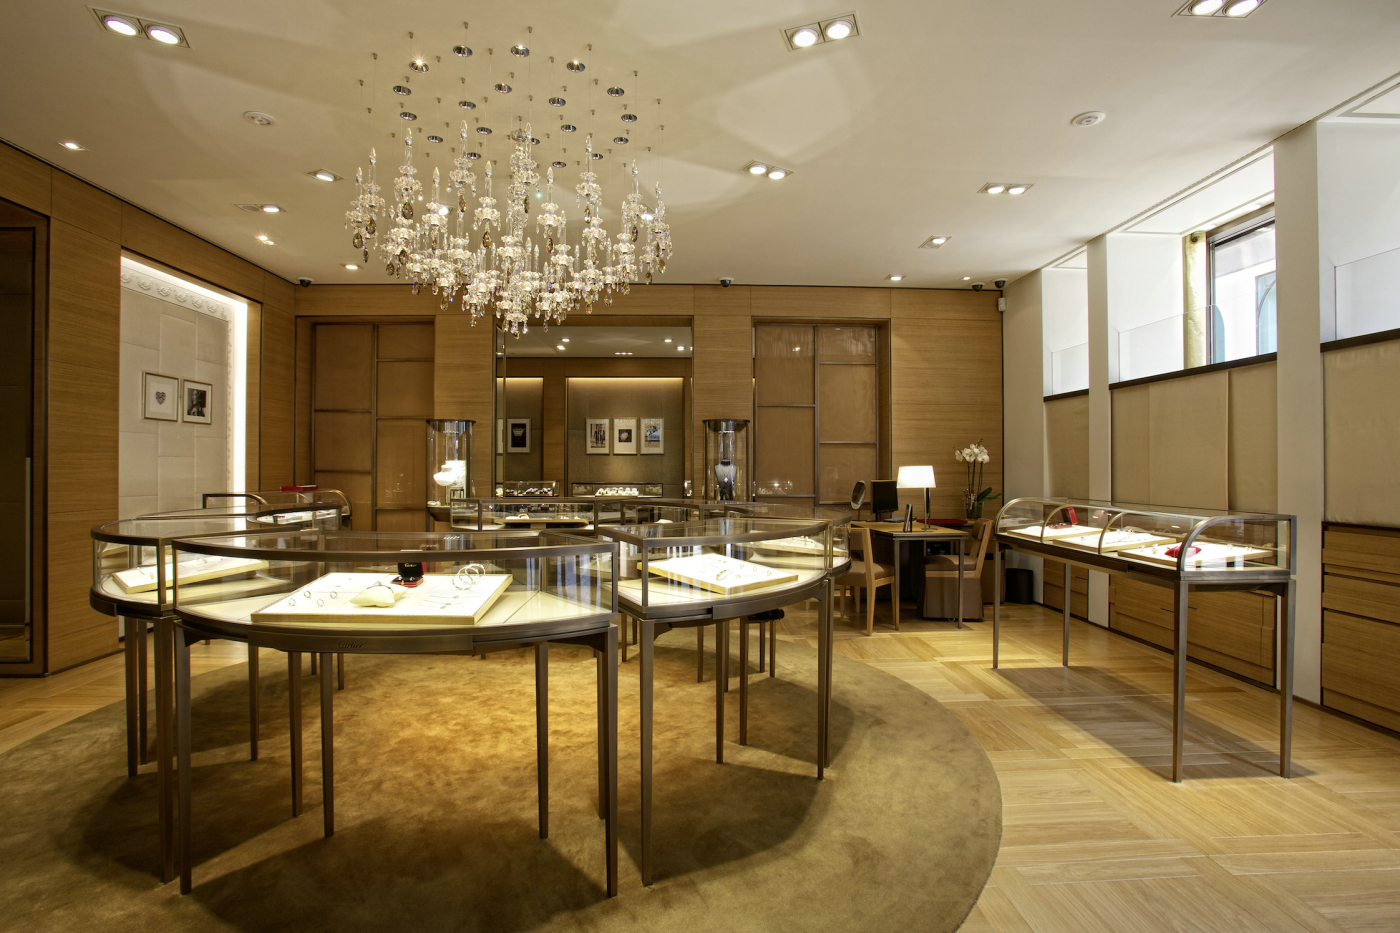 Cartier, Hamburg – Die Cartier Boutique erstrahlt in neuem Glanz